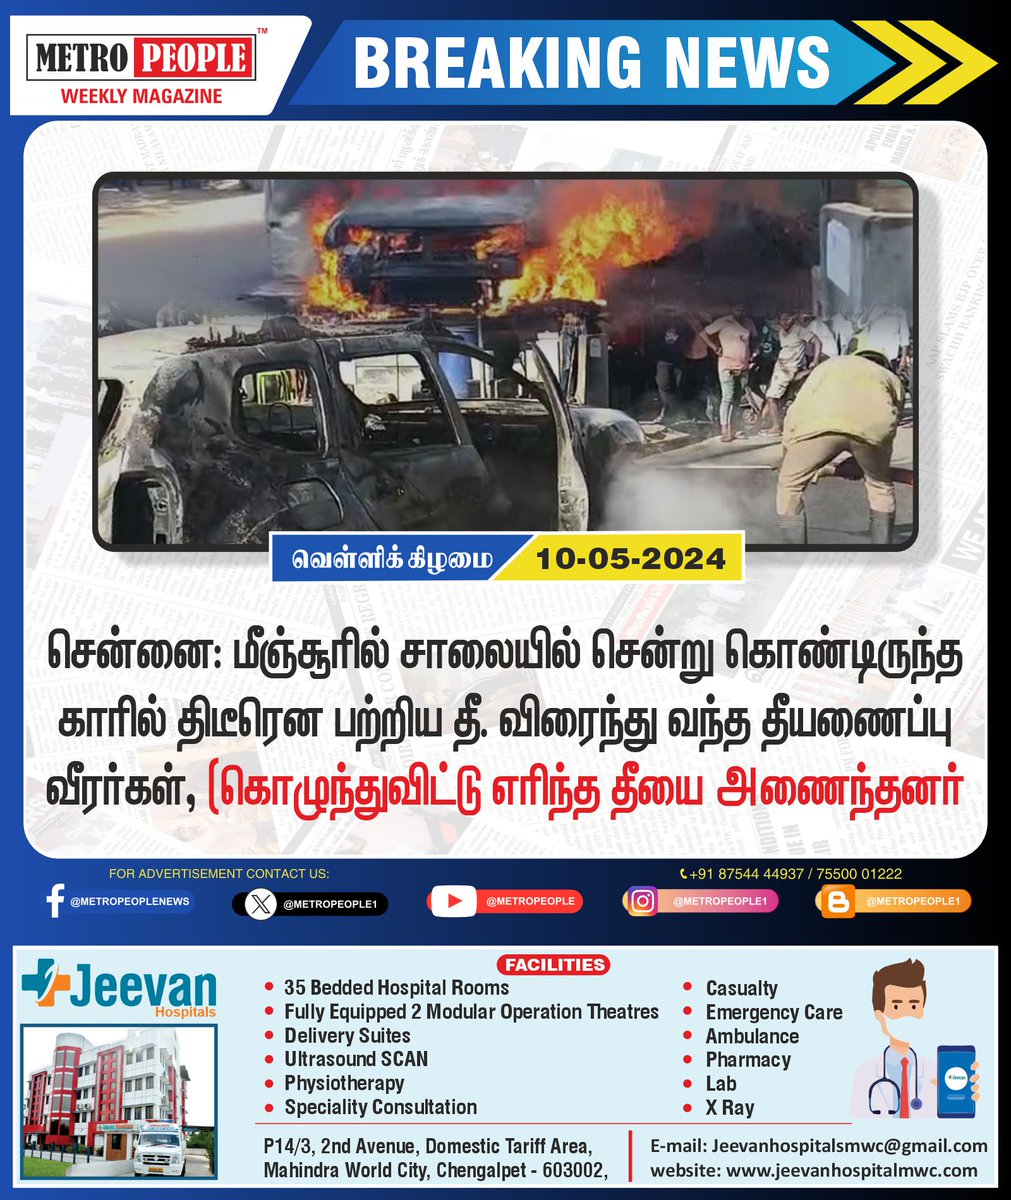 திடீரென காரில் பற்றிய தீ - நல்வாய்ப்பாக உயிர் தப்பிய குடும்பம்!  
#FireAccident  #Chennai  #Sukumar #Sukumarbalakrishnan #TNDWWA #LabourTalk #metropeople #JeevanHospitals